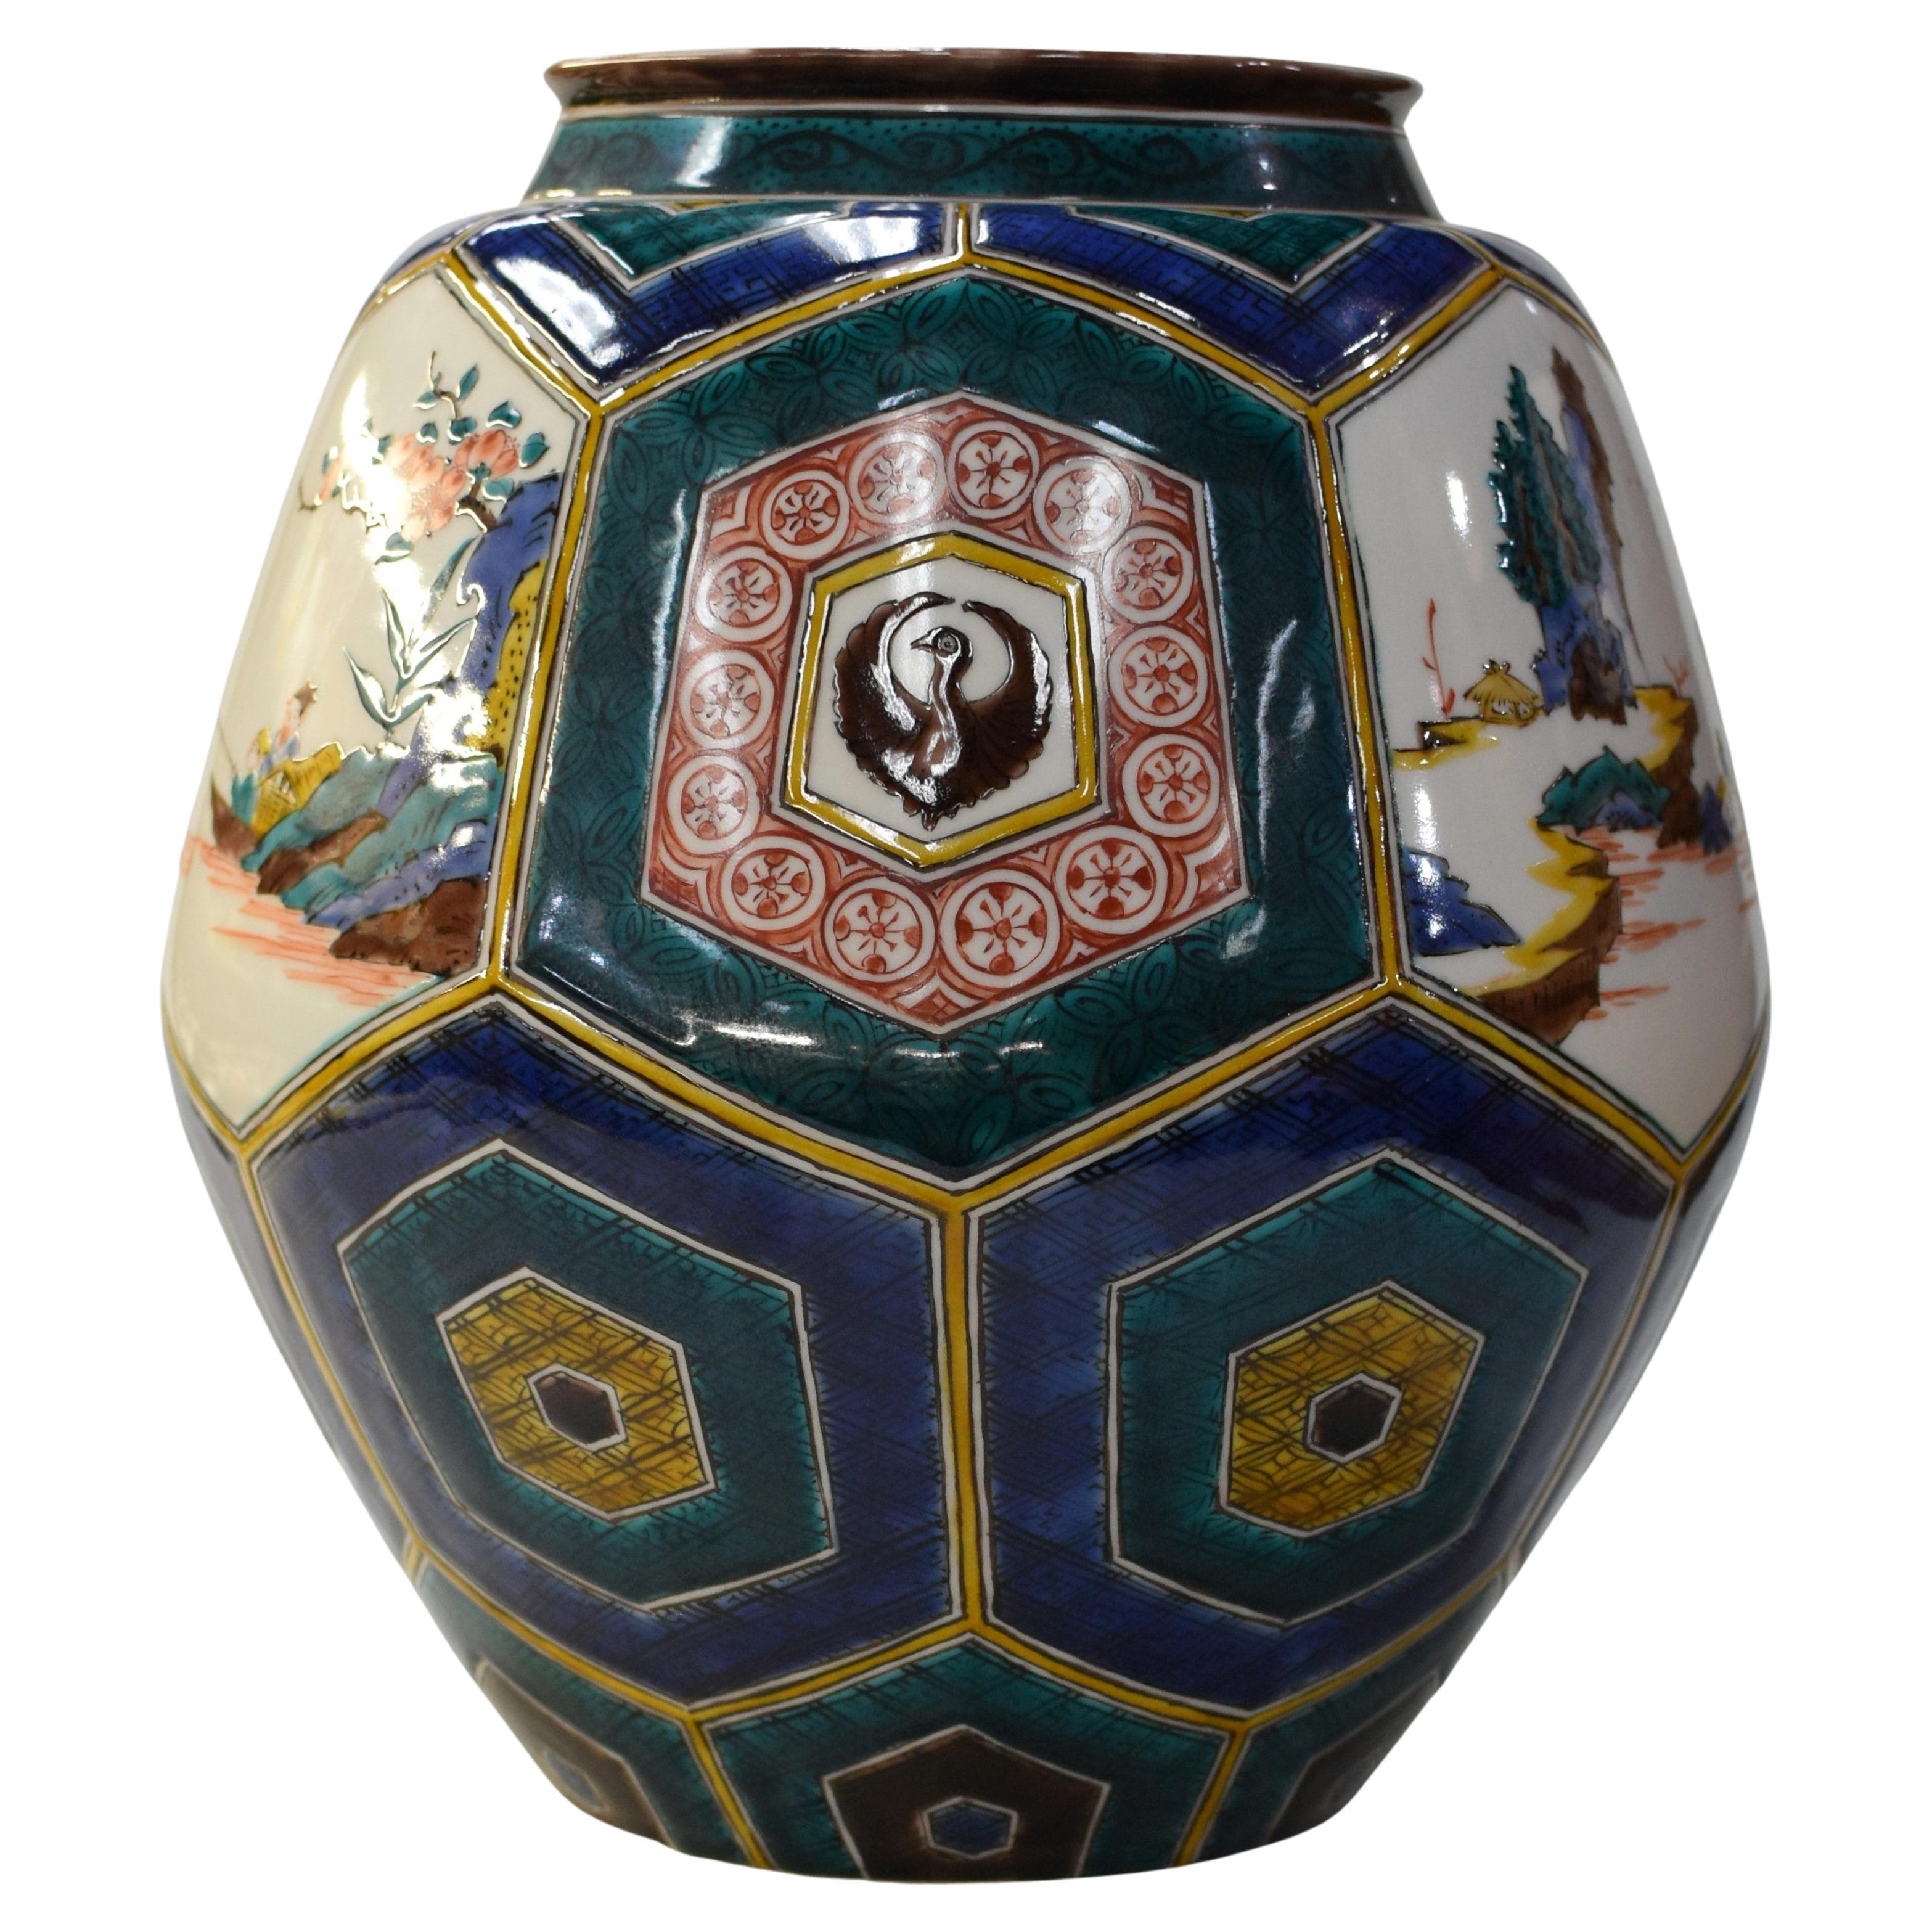 Exquis vase japonais contemporain en porcelaine décorative Kutani, peint à la main dans les couleurs vives traditionnelles Kutani vert, bleu, jaune et rouge sur une forme unique et étonnante, un chef-d'œuvre signé par la troisième génération de